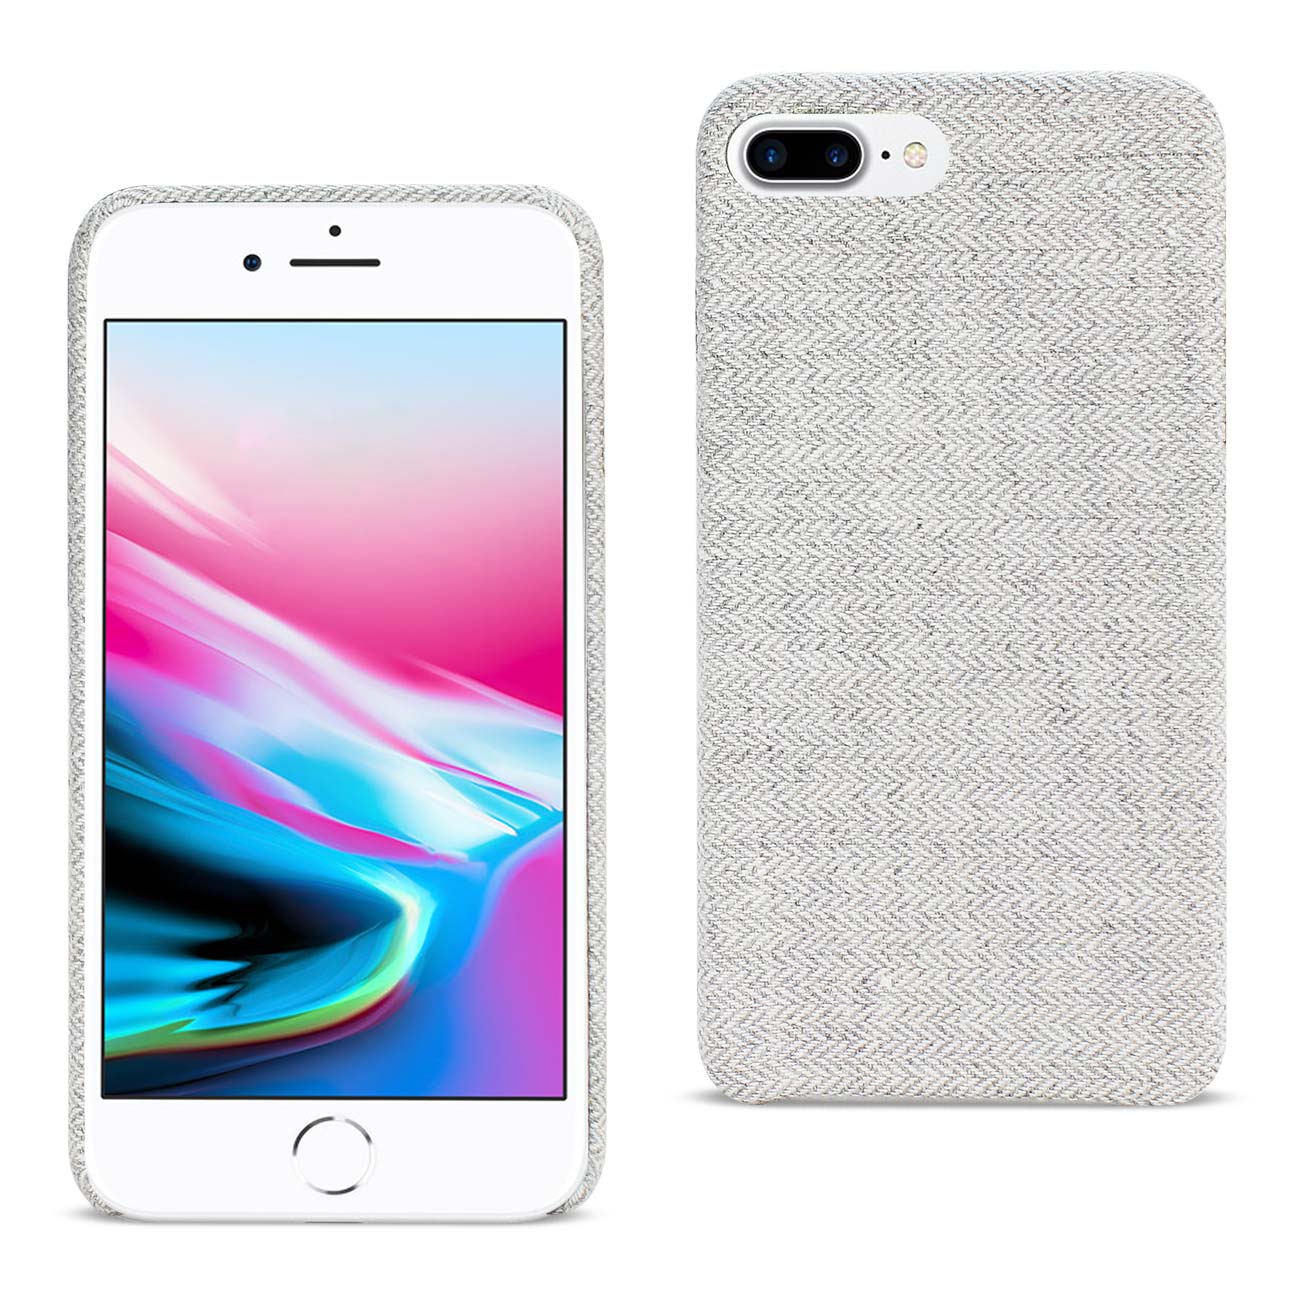 Case Herringbone Fabric iPhone 8 Plus Light Gray Color